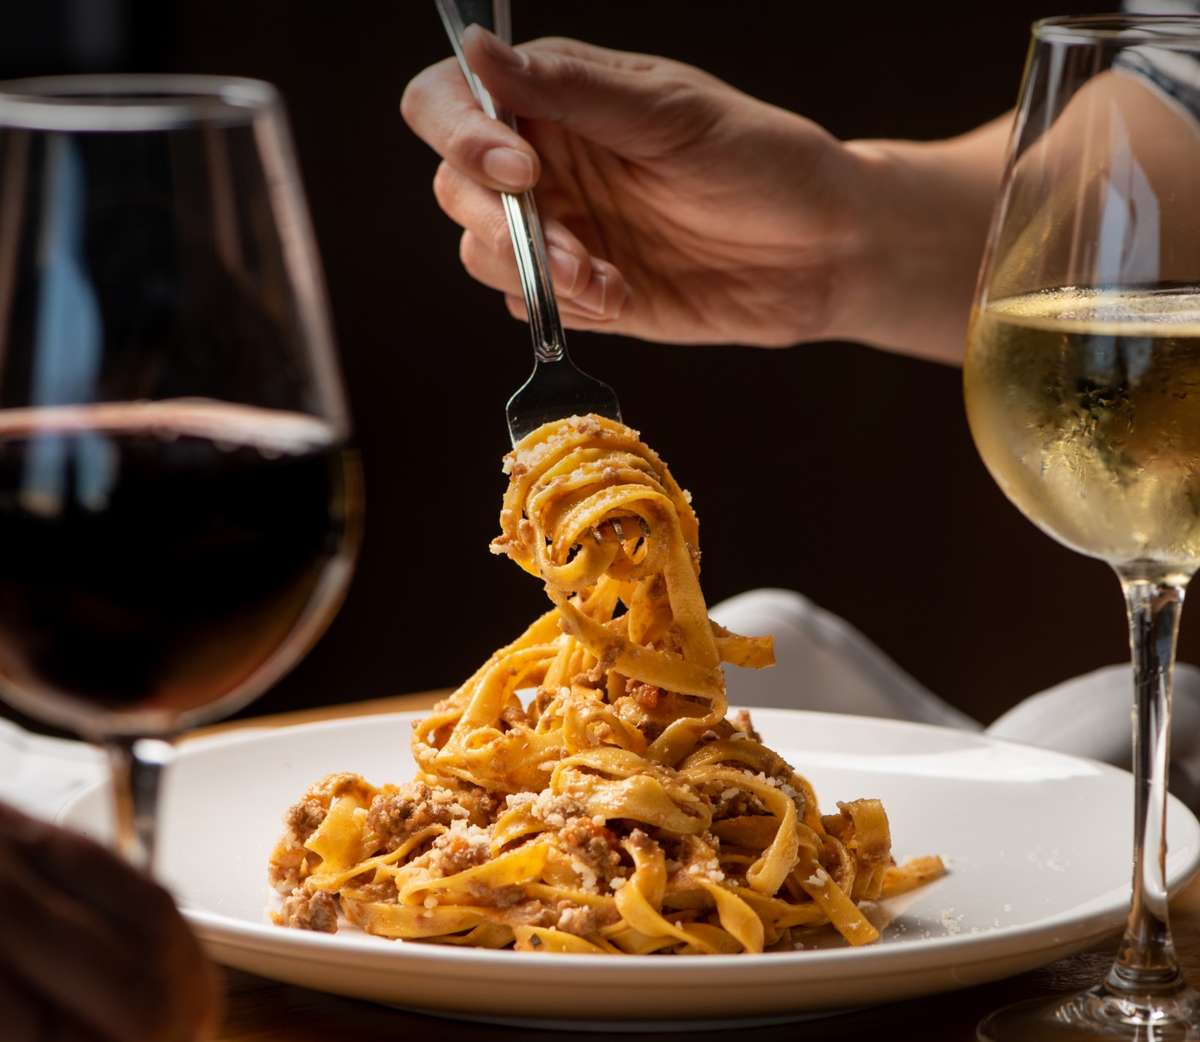 wine and pasta